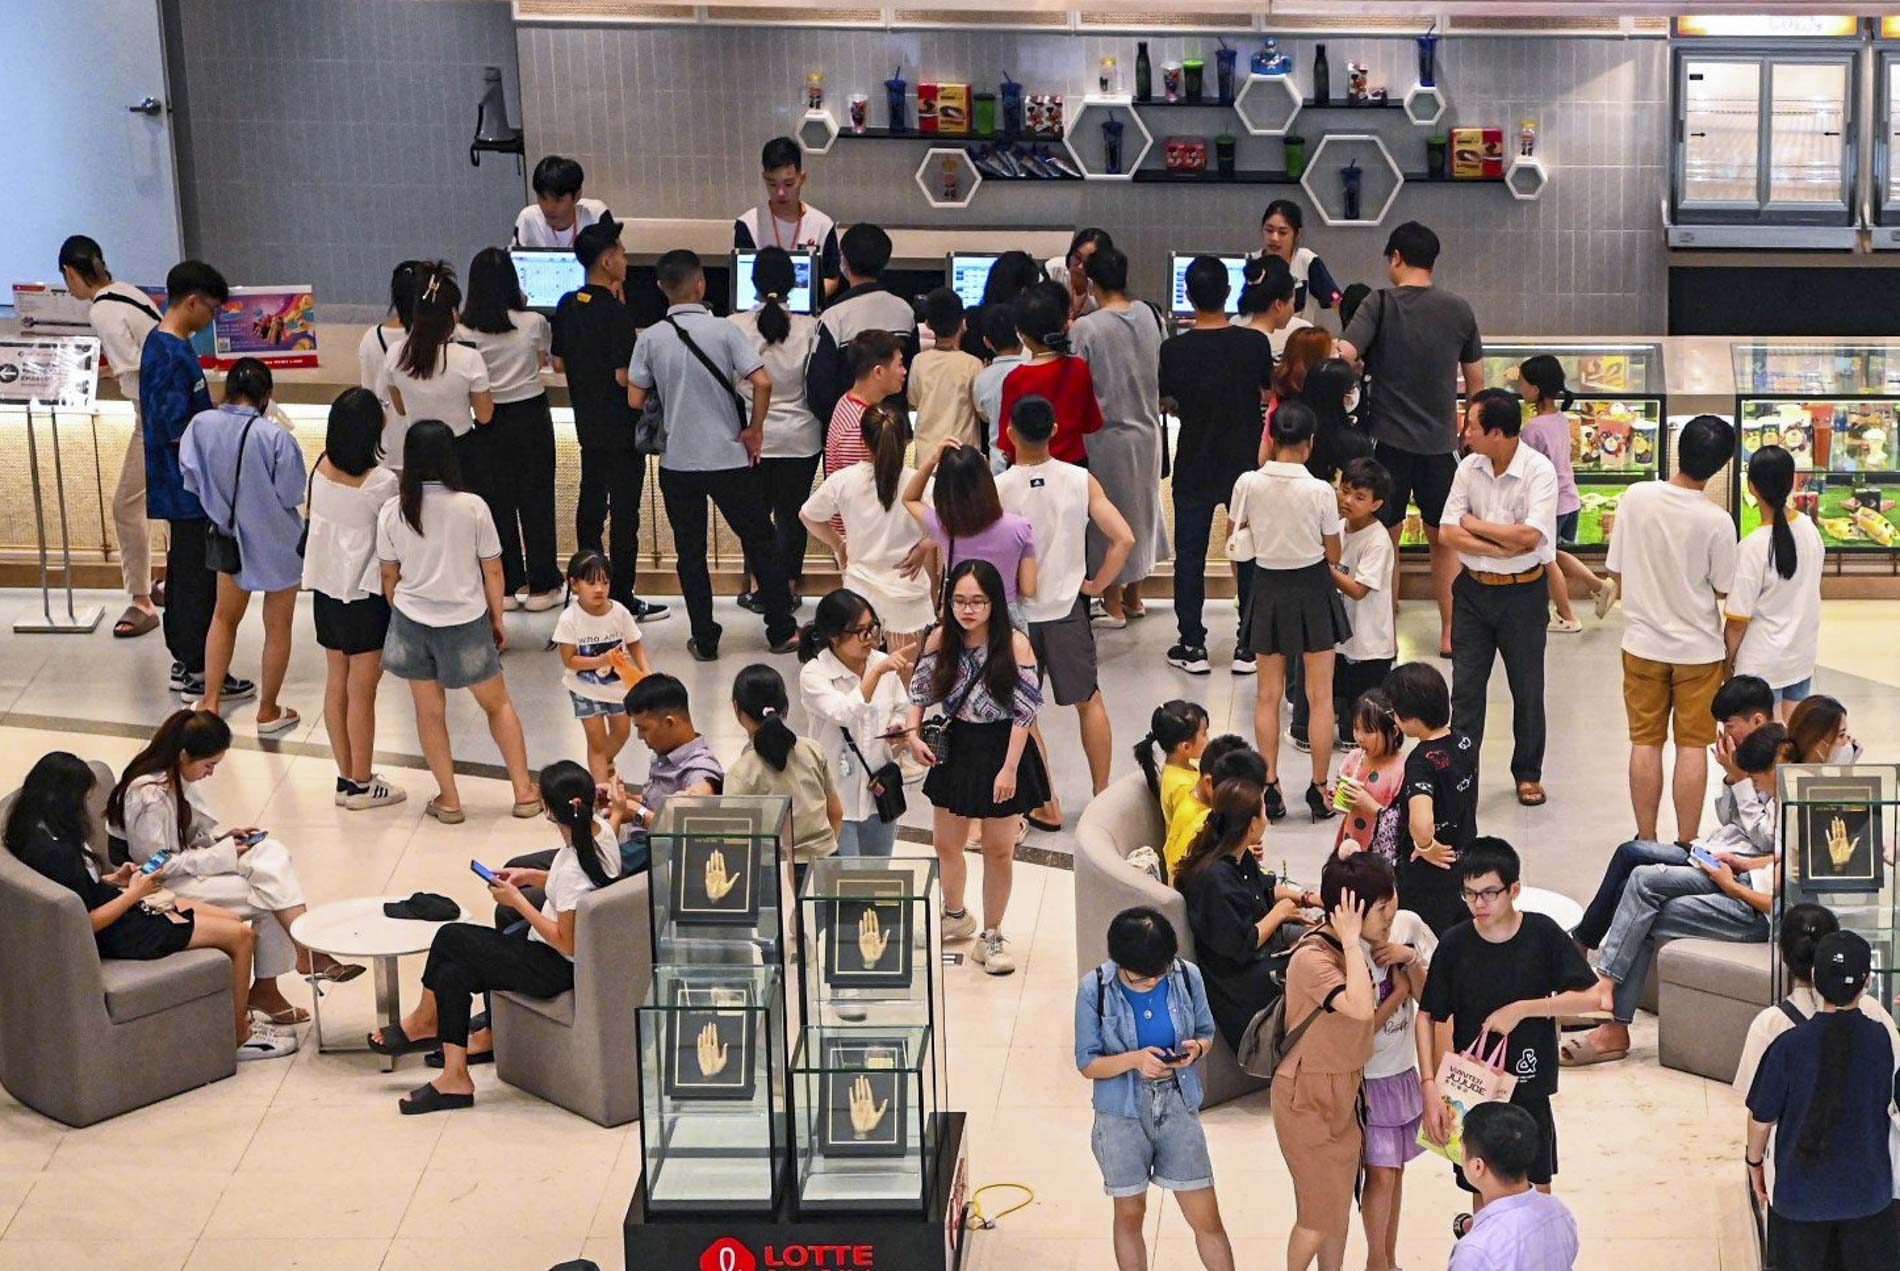 Trung tâm thương mại ở Hà Nội kẹt cứng người dịp nghỉ lễ, xếp hàng gần 40 phút mới mua được vé - Ảnh 5.